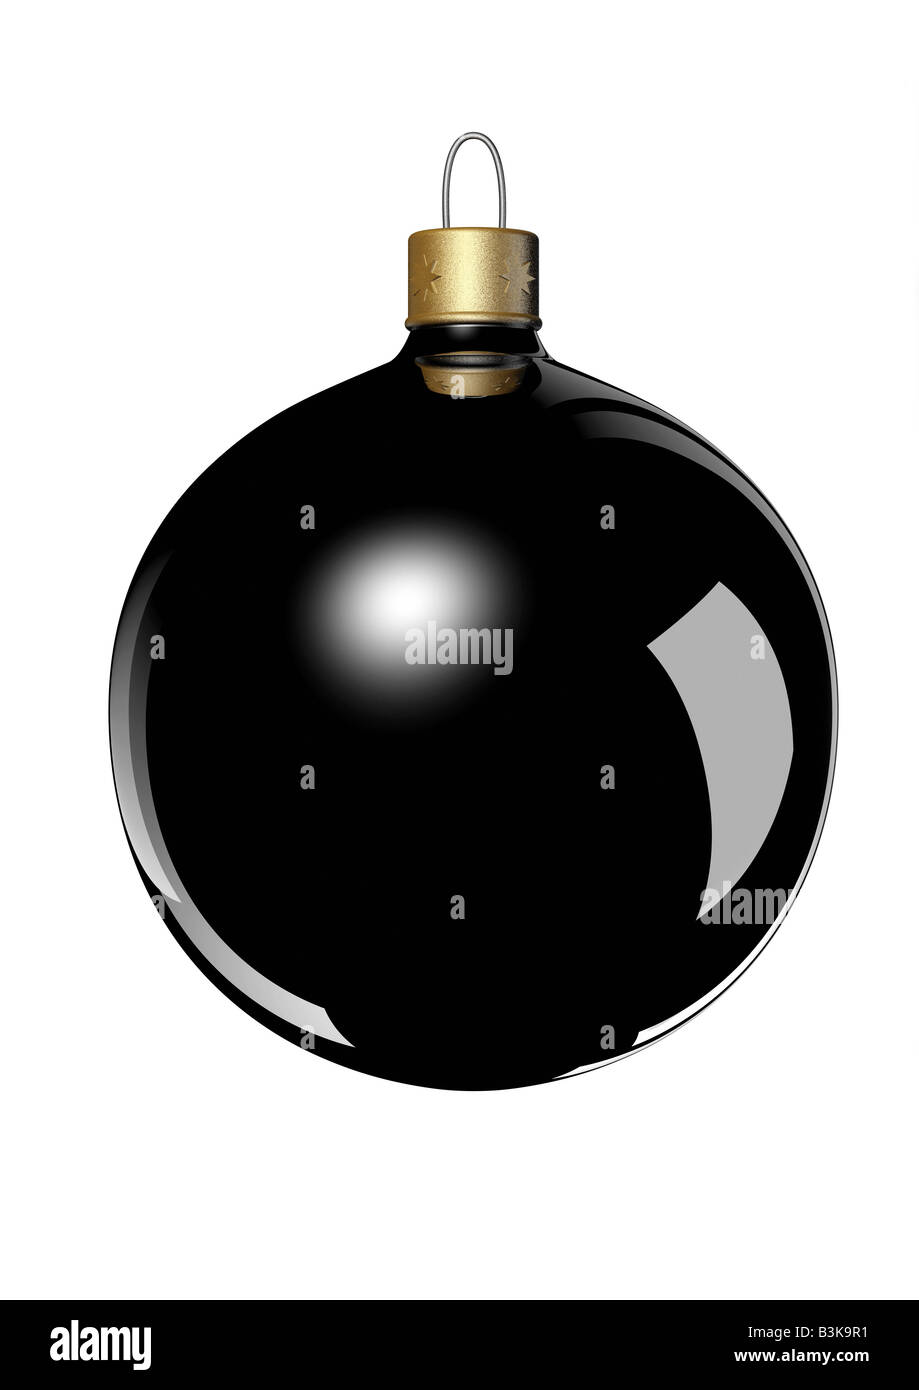 black christmas ball ornament on white backgrund schwarze Christbaumkugel auf weißem Hintergrund Stock Photo